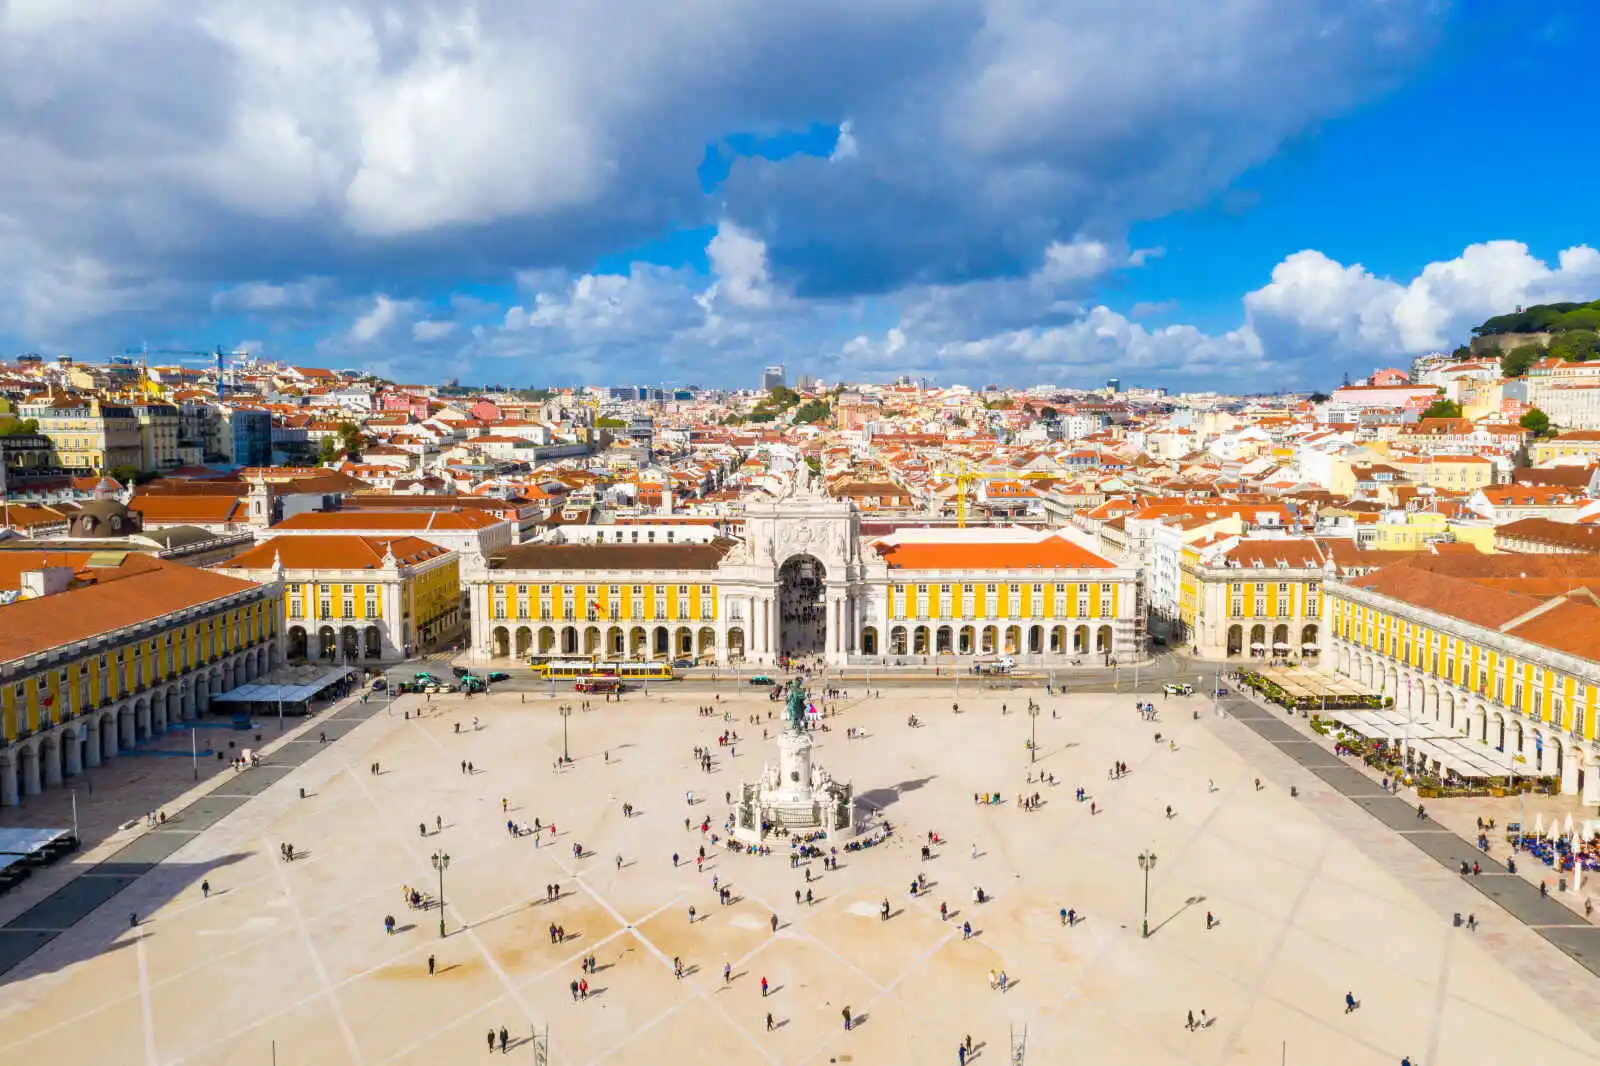 Place du commerce, Lisbonne, Portugal